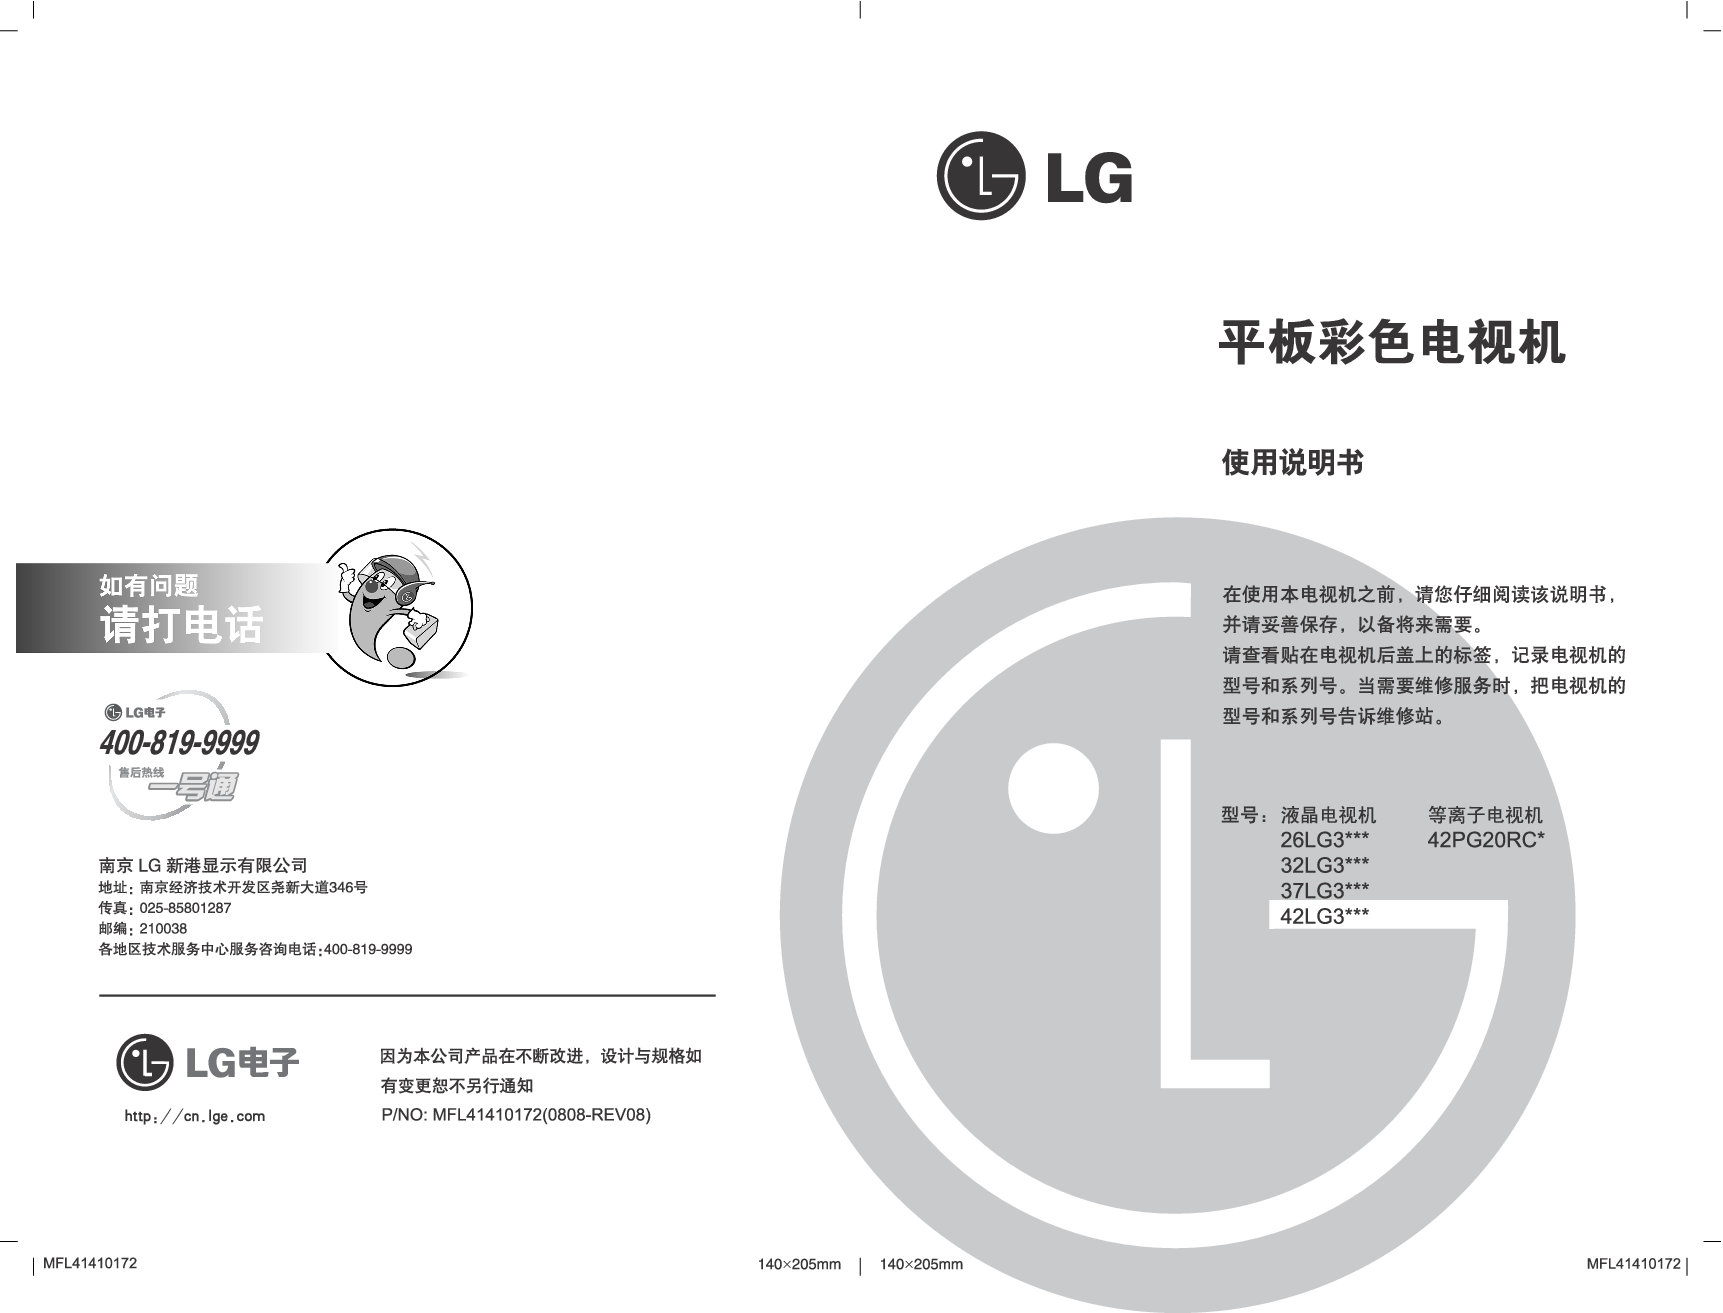 LG 26LG31RC-TA, 42PG20RC-TA 使用说明书 封面